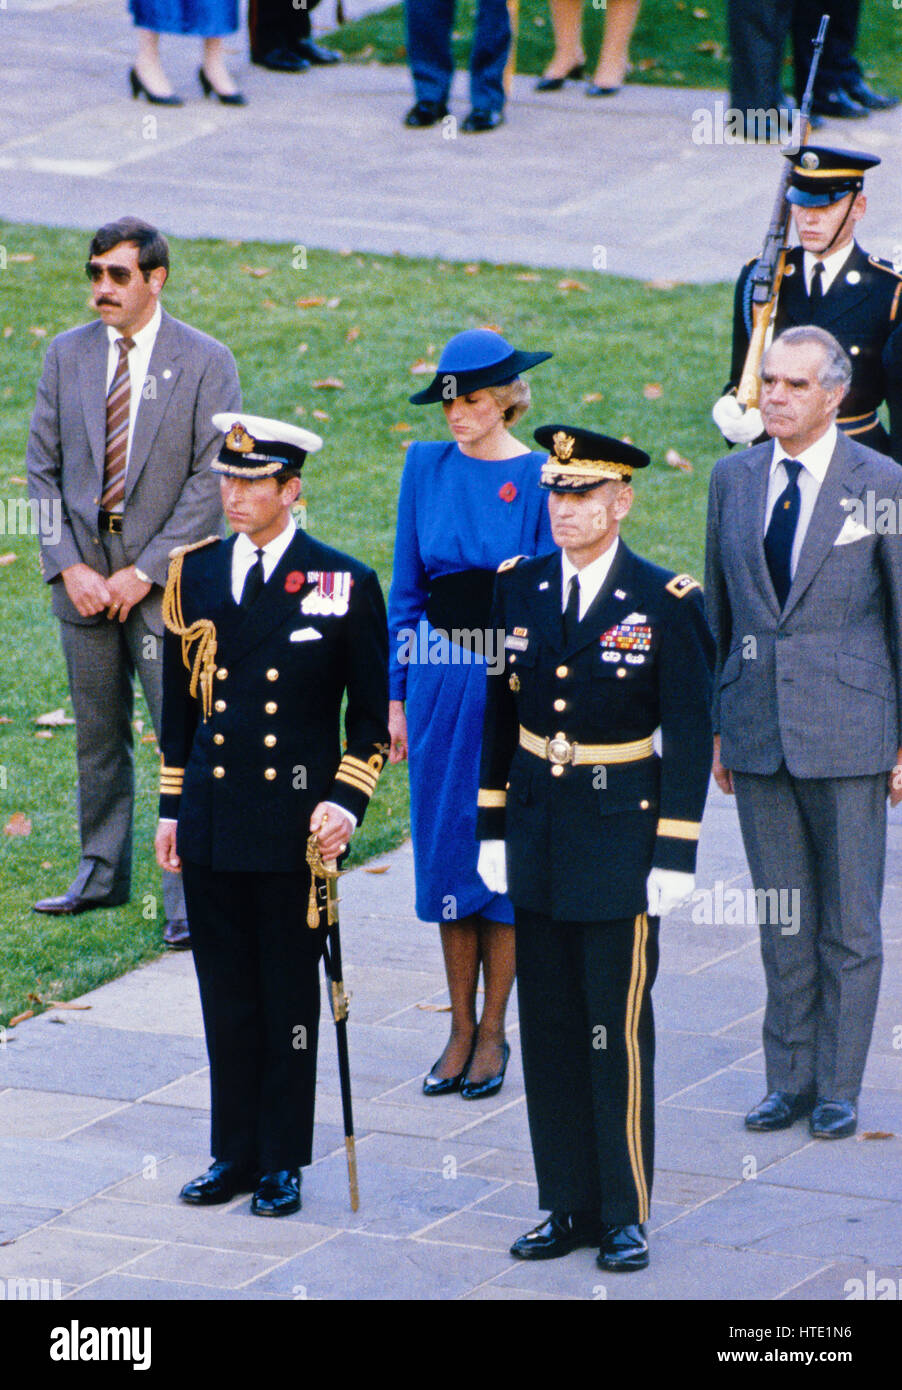 La princesse Diana, centre en robe bleue, regarde son mari le prince Charles, centre gauche, arrive à déposer une couronne sur la tombe des inconnues à l'occasion de la Journée des anciens combattants au cimetière national d'Arlington à Arlington, en Virginie, le 11 novembre, 1985 Banque D'Images